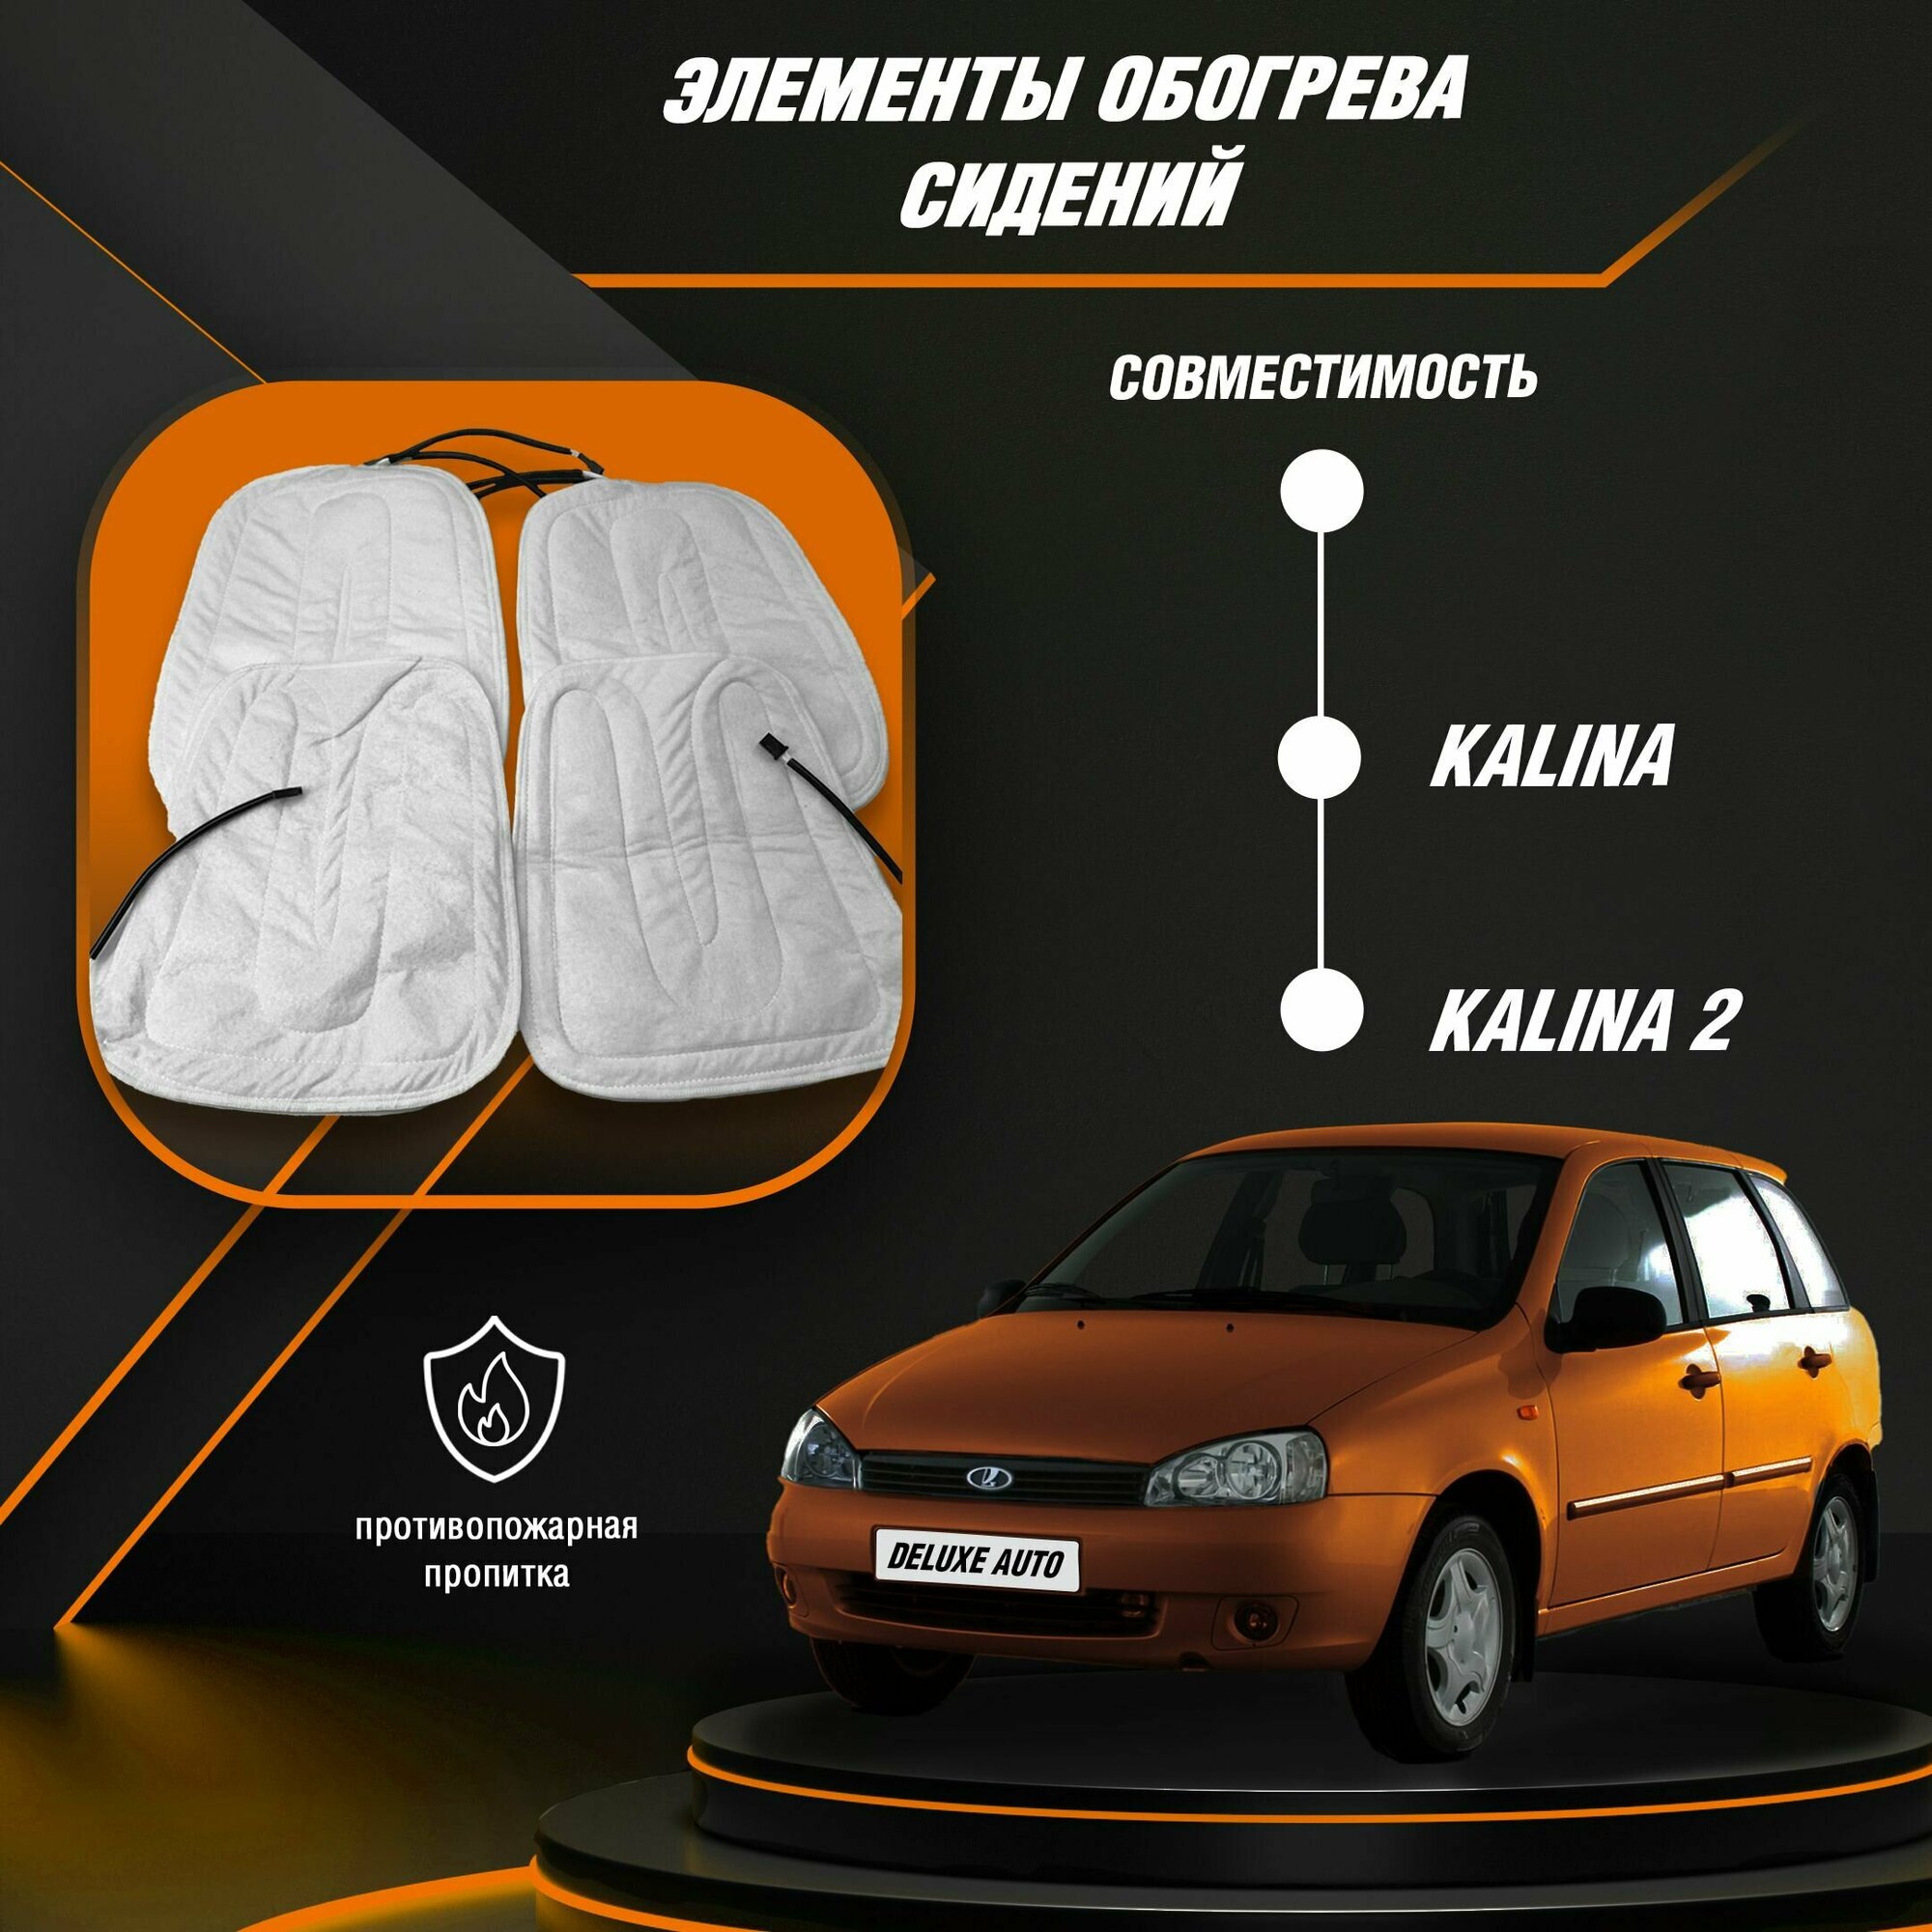 Элементы обогрева сидений Для автомобилей- Лада Калина1, Лада Калина 2 ( Все модификации кузова)